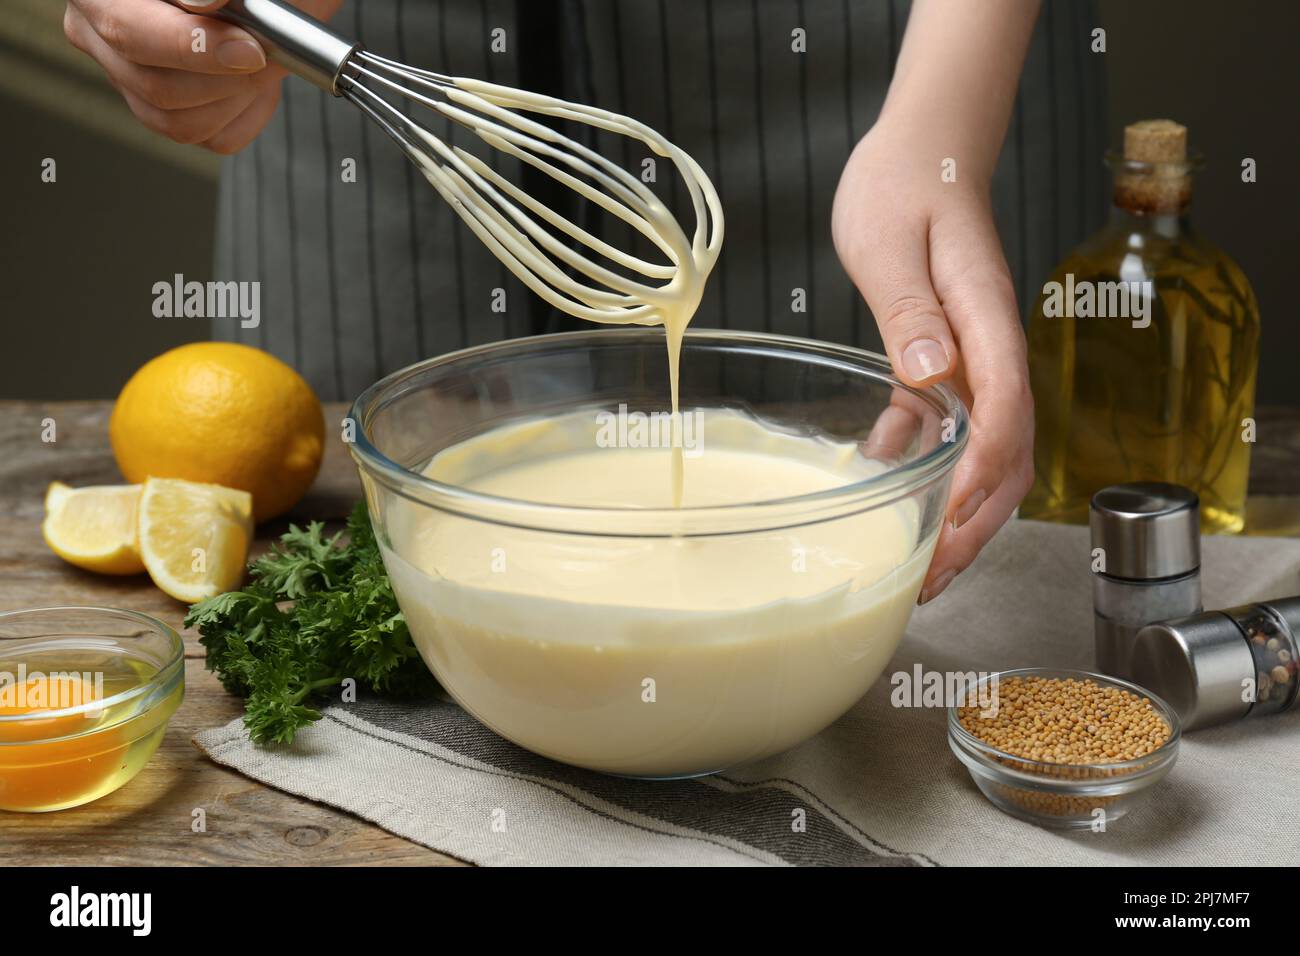 https://c8.alamy.com/compes/2pj7mf7/mujer-haciendo-mayonesa-casera-en-tazon-de-vidrio-en-la-mesa-de-madera-primer-plano-2pj7mf7.jpg